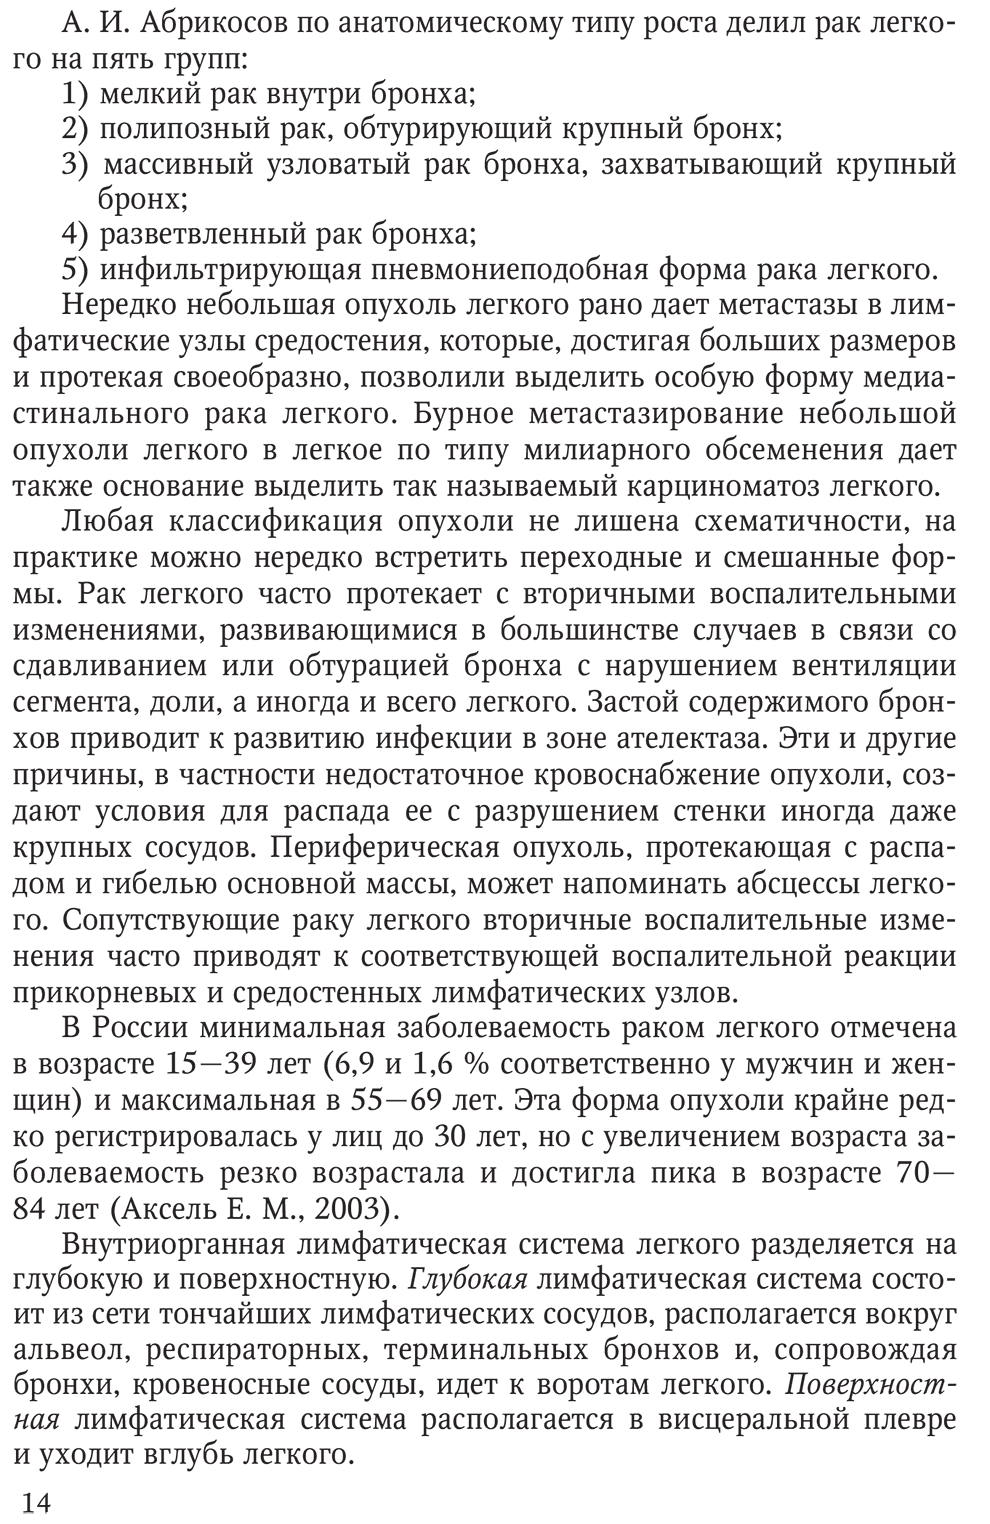 Пример страницы из книги "Рак легкого" - Довгалюк А. З.